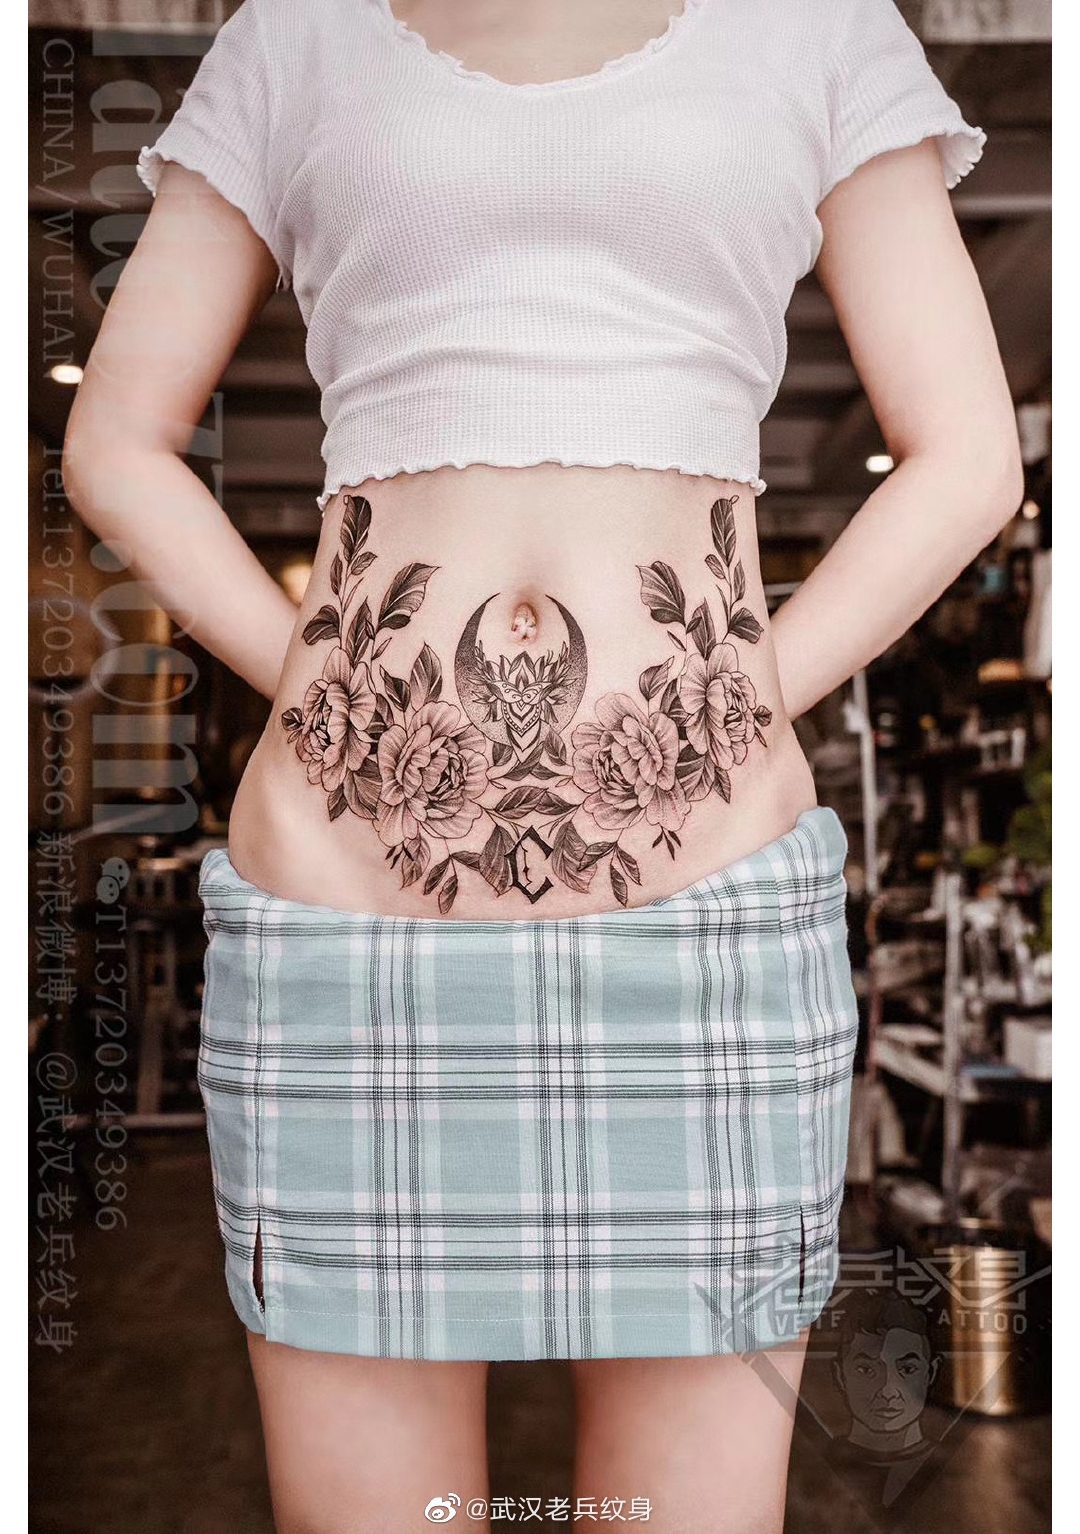 腹部玫瑰花纹身遮盖妊娠纹纹身作品